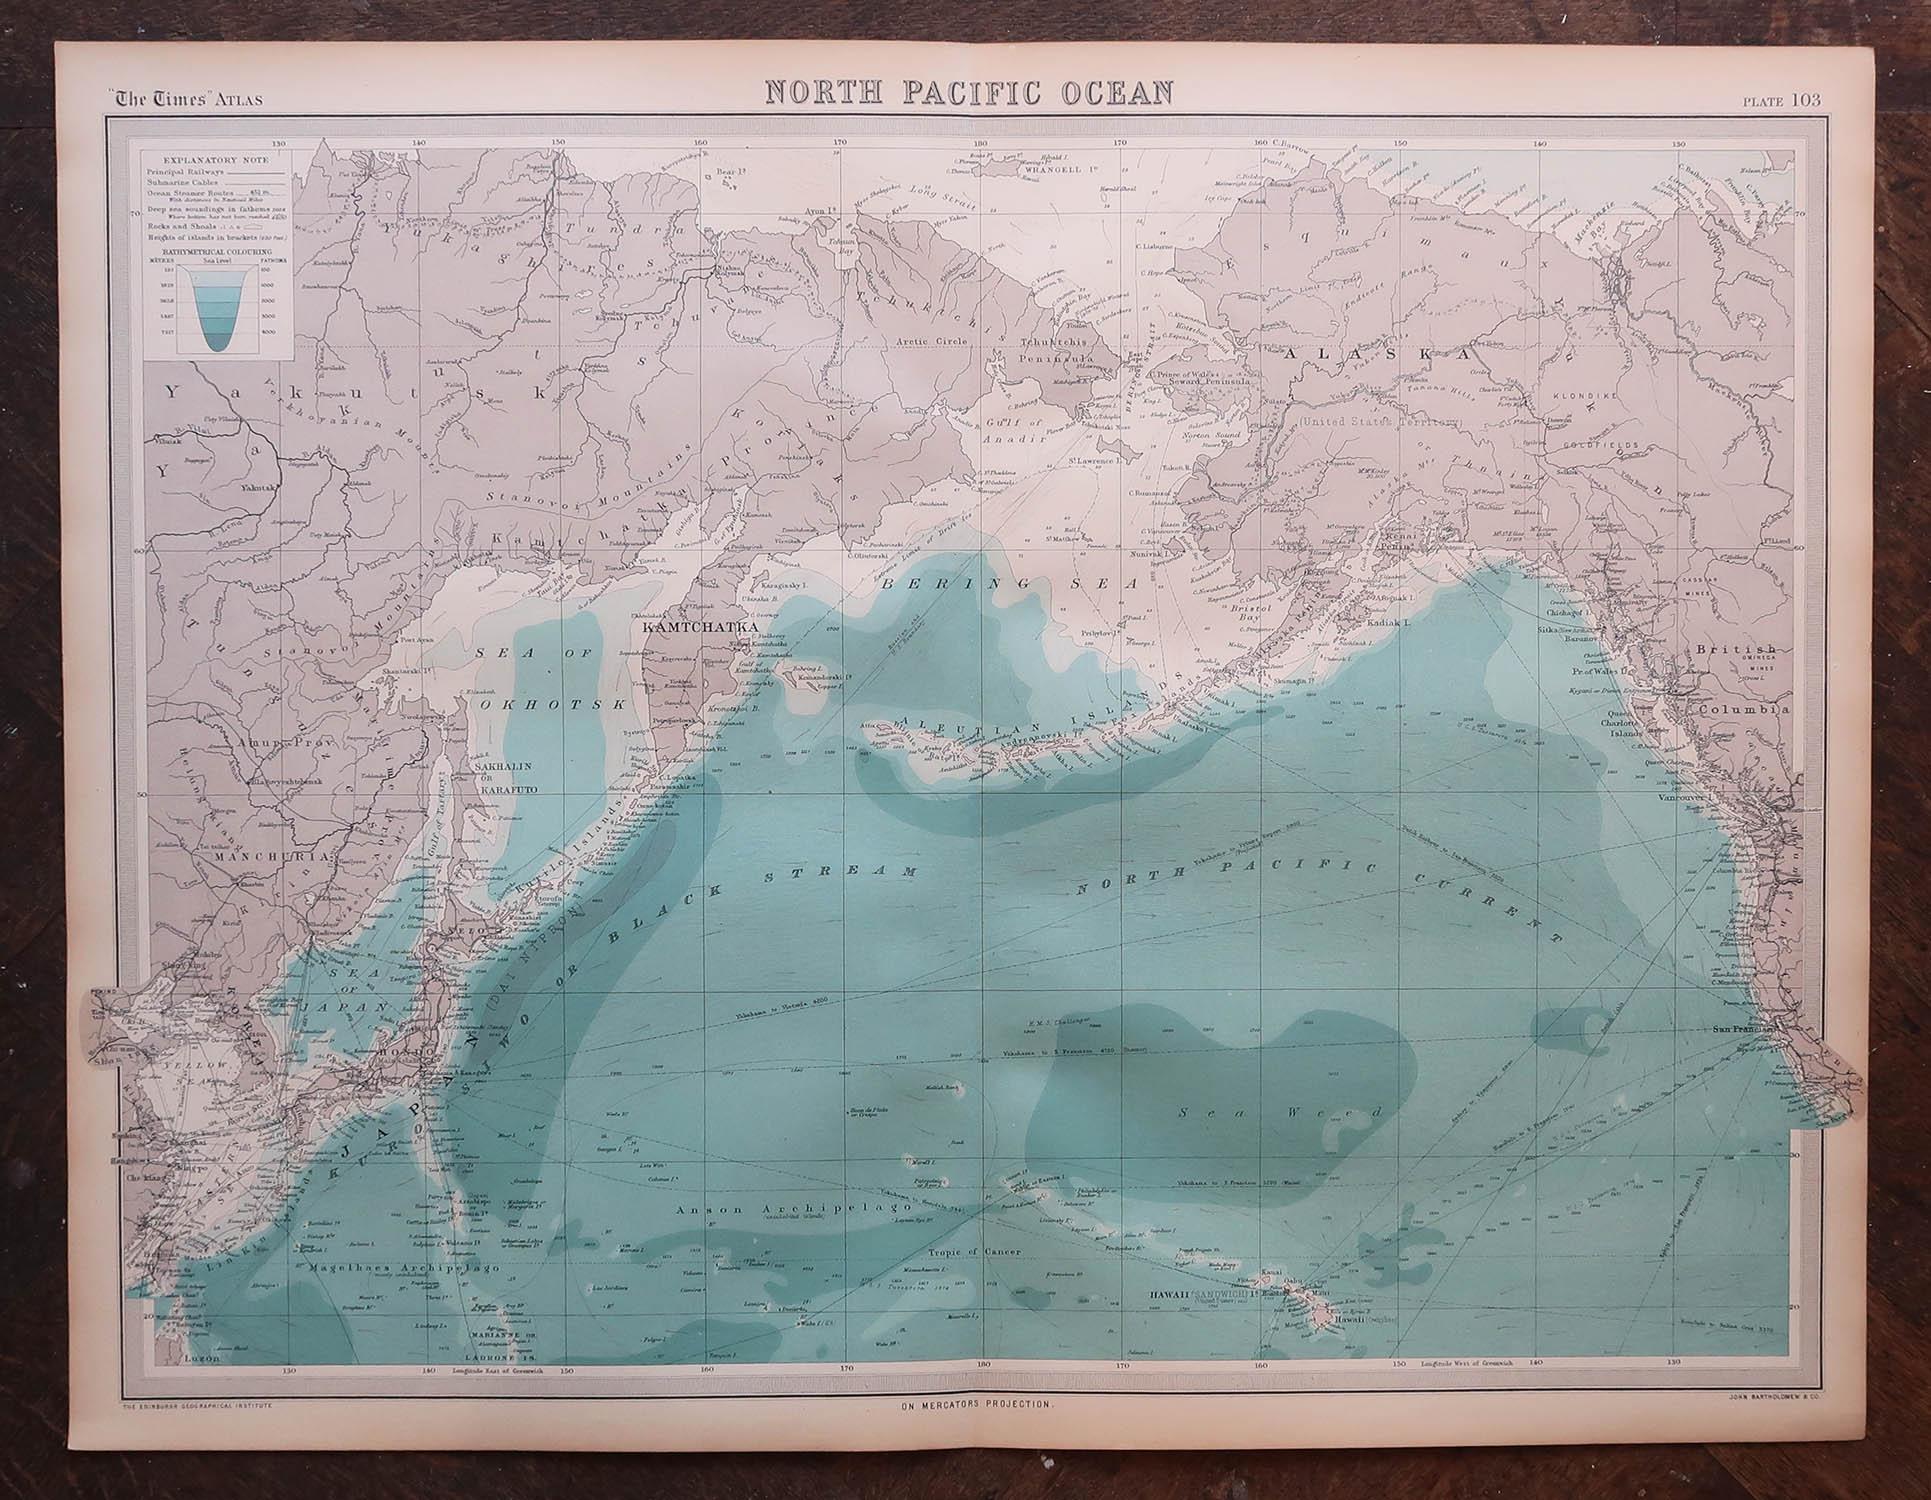 5 großartige Karten oder Seekarten der Weltmeere

Mir gefällt besonders die Farbe dieser Karten

Ungerahmt

Original Farbe

Von John Bartholomew und Co. Geographisches Institut Edinburgh

Veröffentlicht, ca. 1920

Kostenloser Versand.